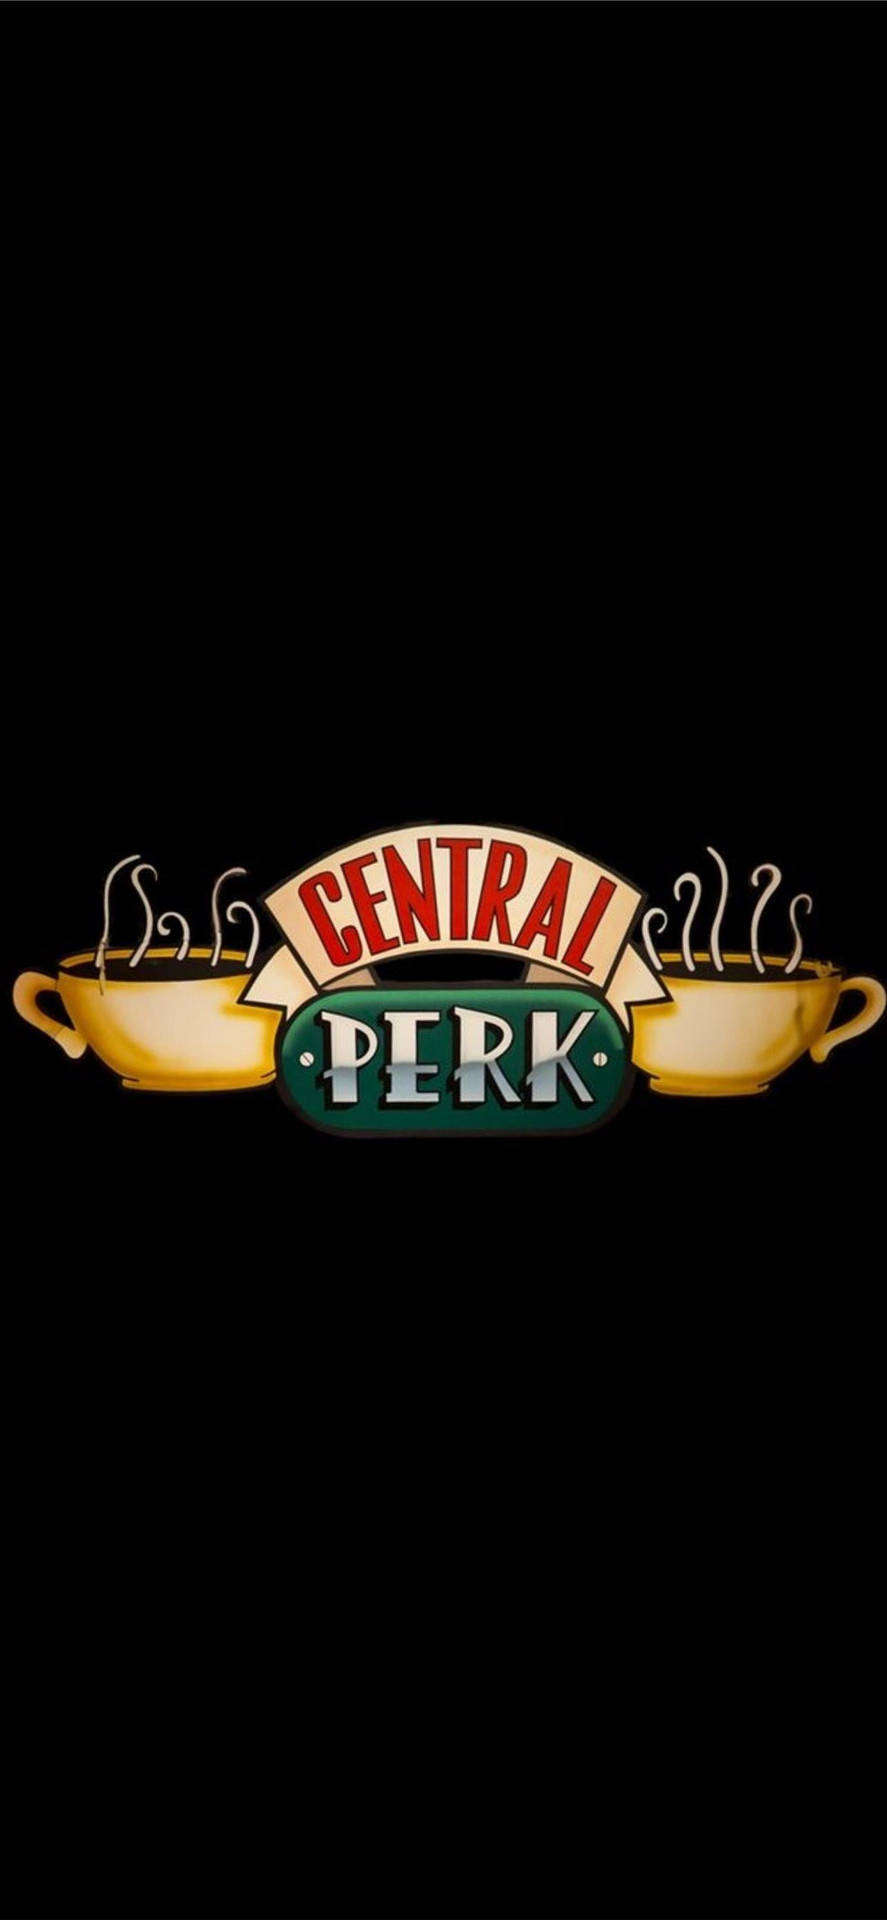 Vännerstv-serie Central Perk Logotyp. Wallpaper